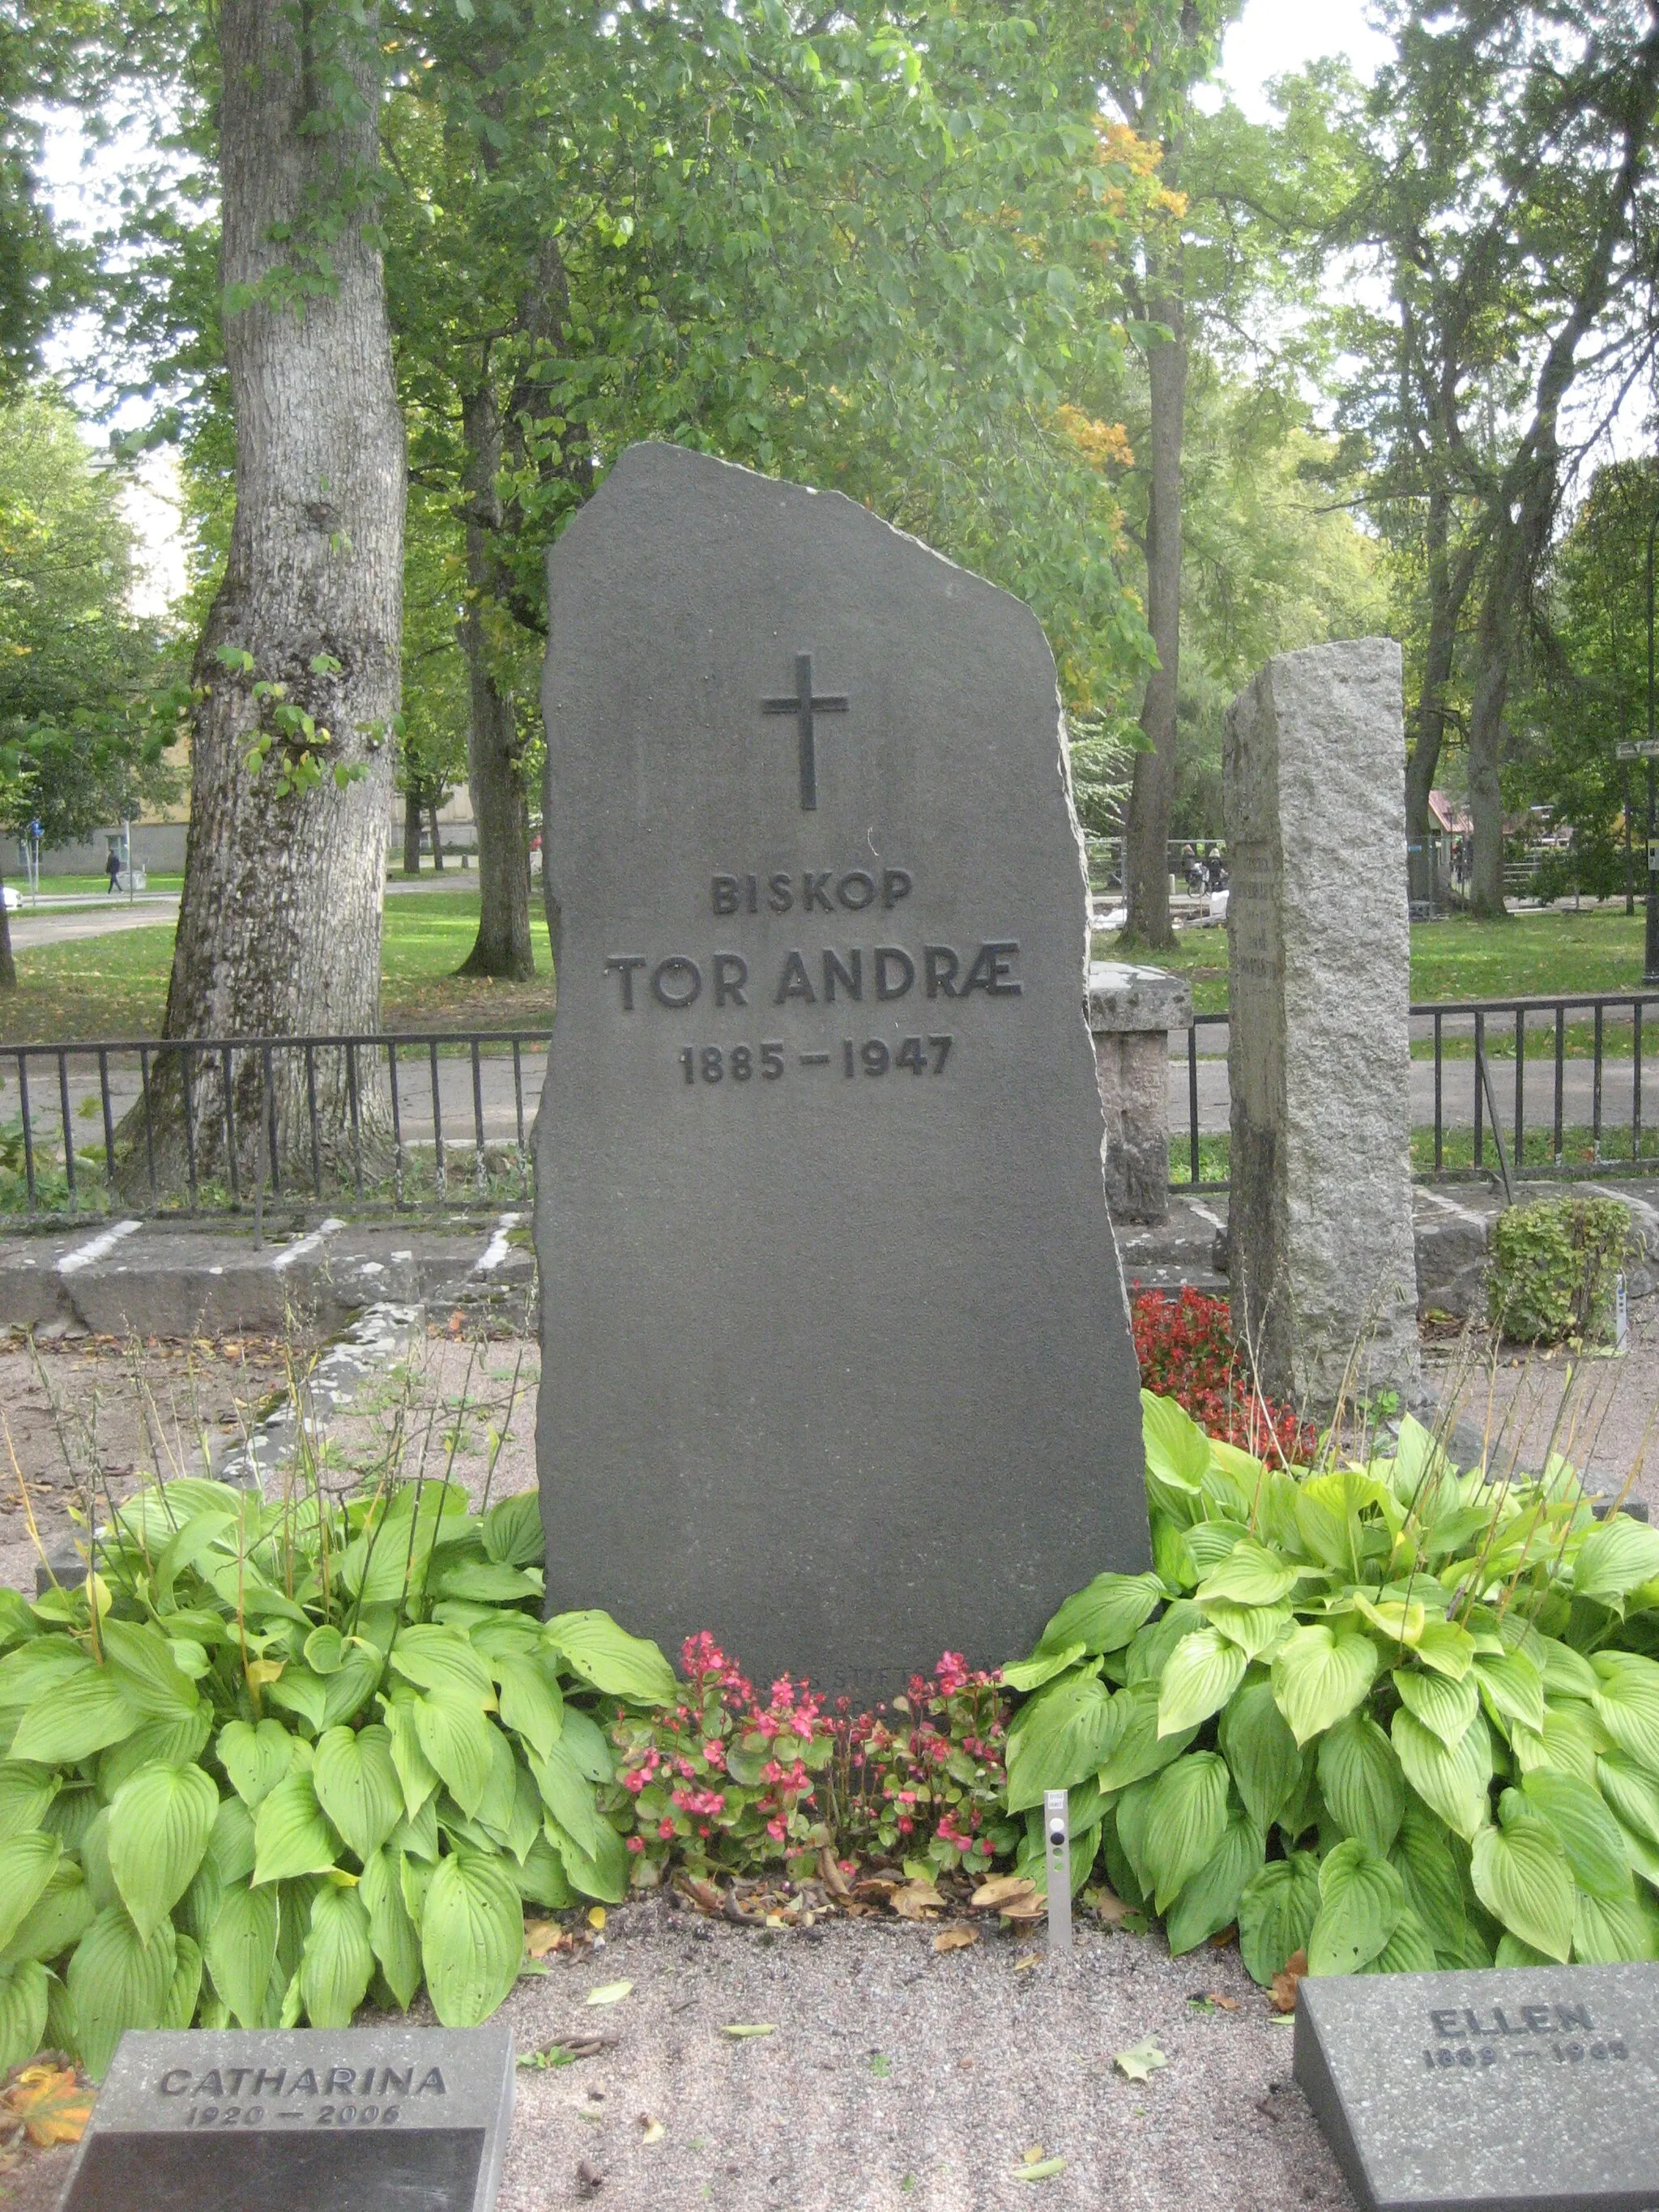 Photo showing: Bishop Tor Andræ, Uppsala Cemetery (Sweden)